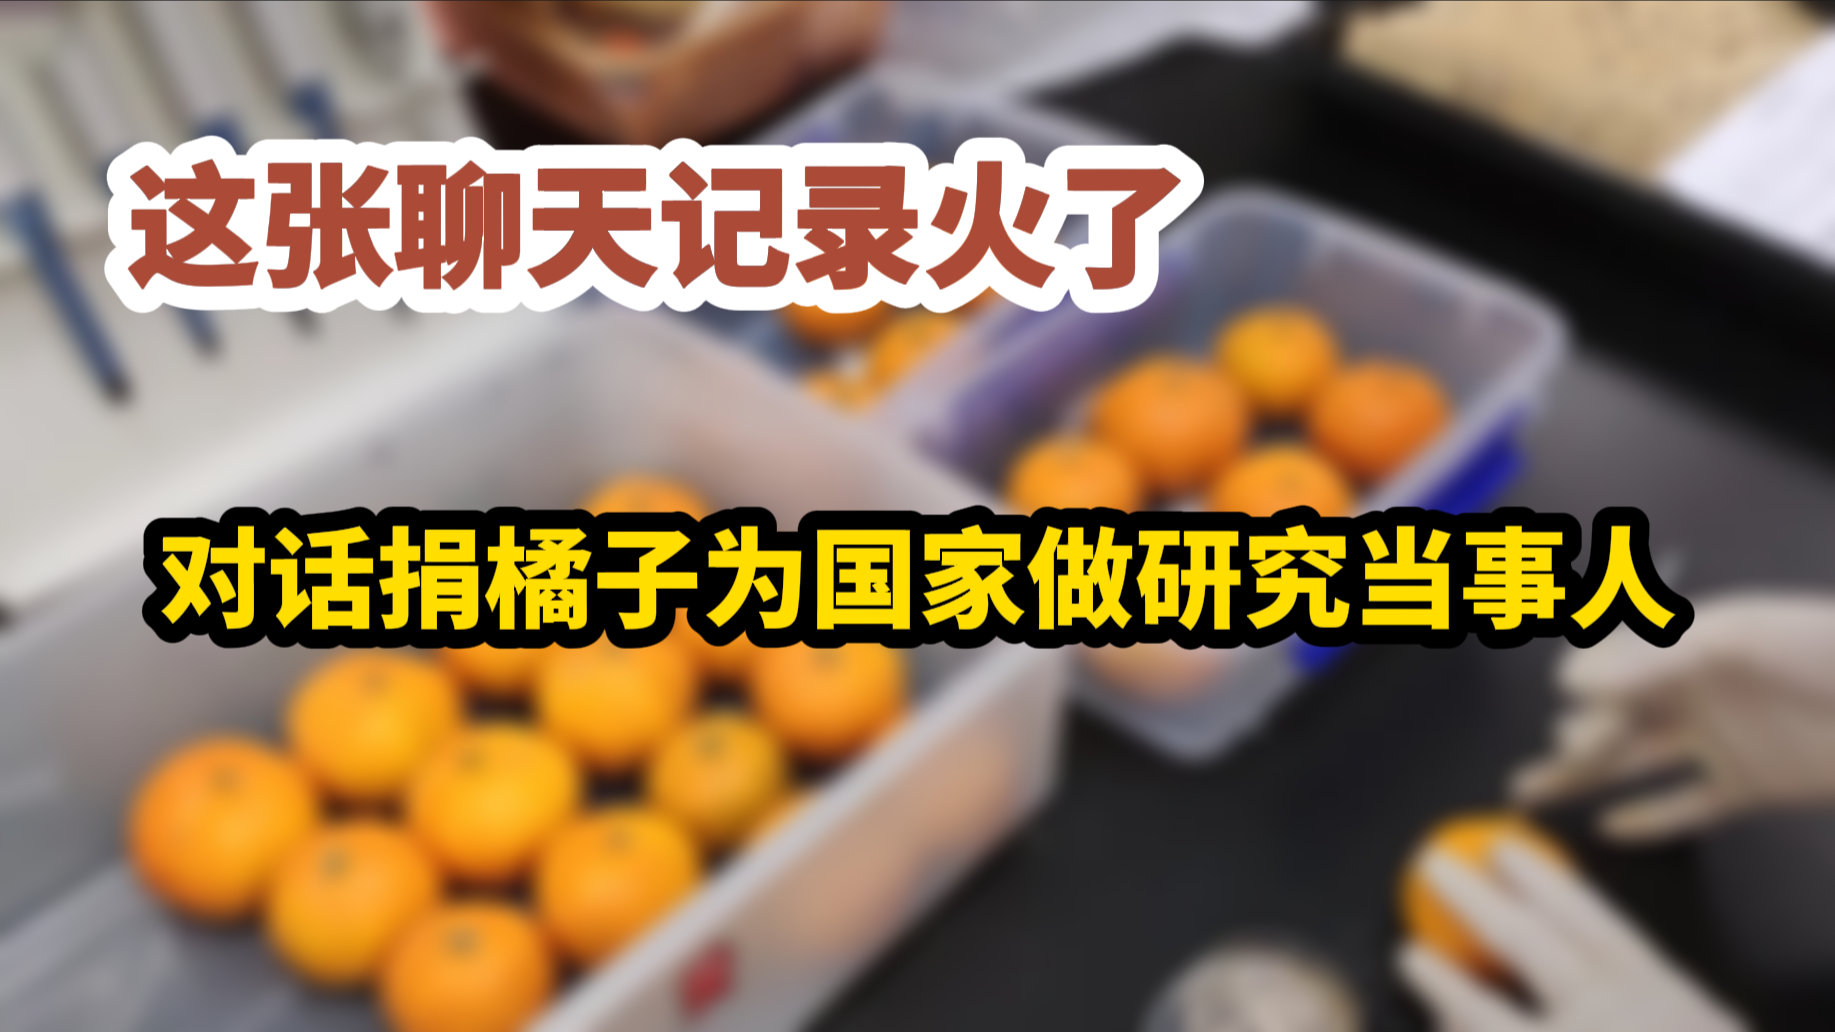 捐橘子为国家做研究的老板找到了 网友:泪目了